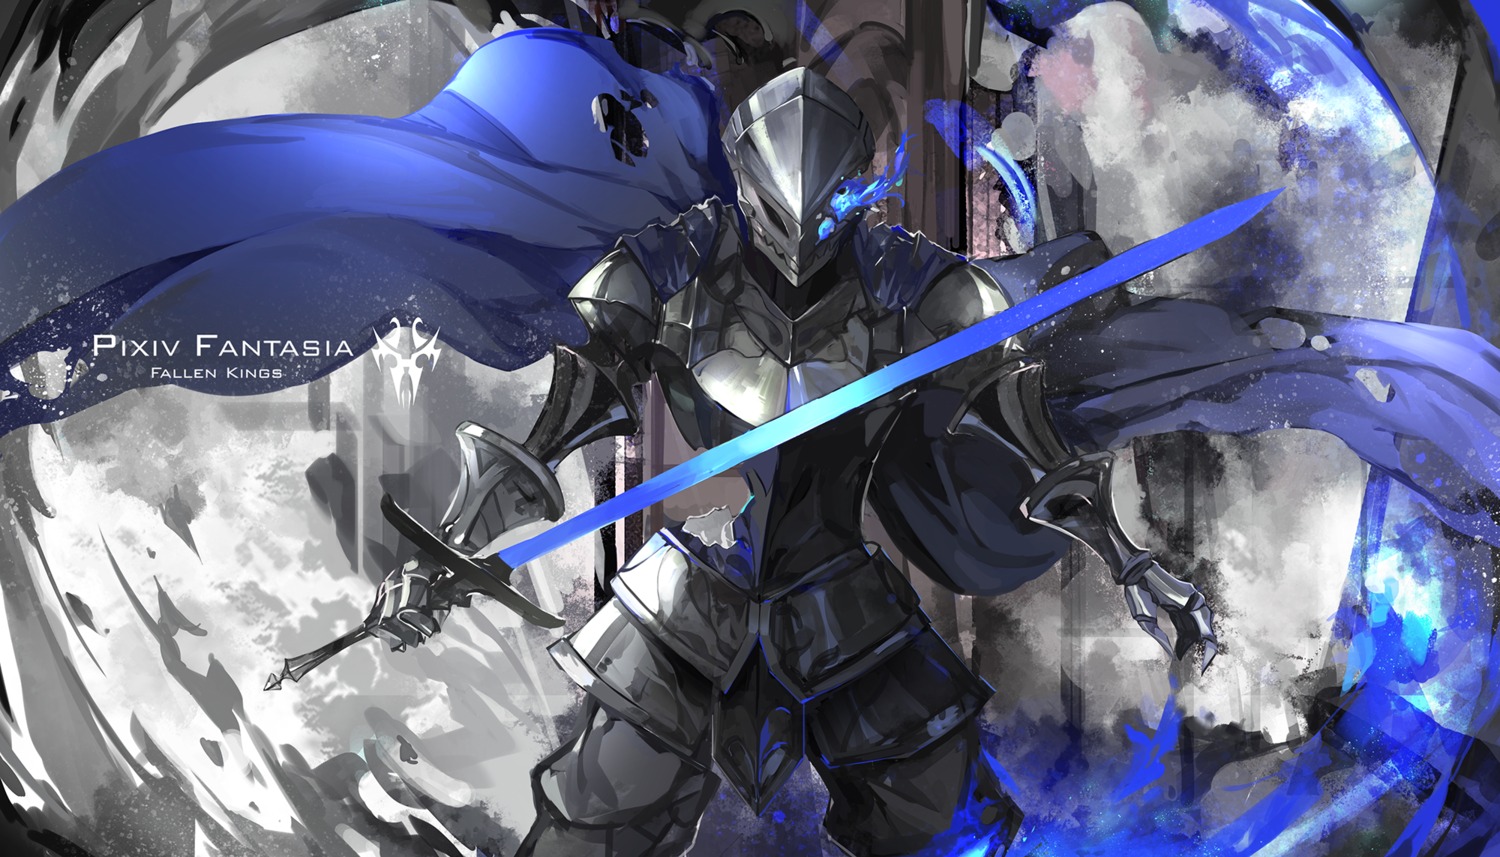 armor pixiv_fantasia pixiv_fantasia_fallen_kings saberiii sword